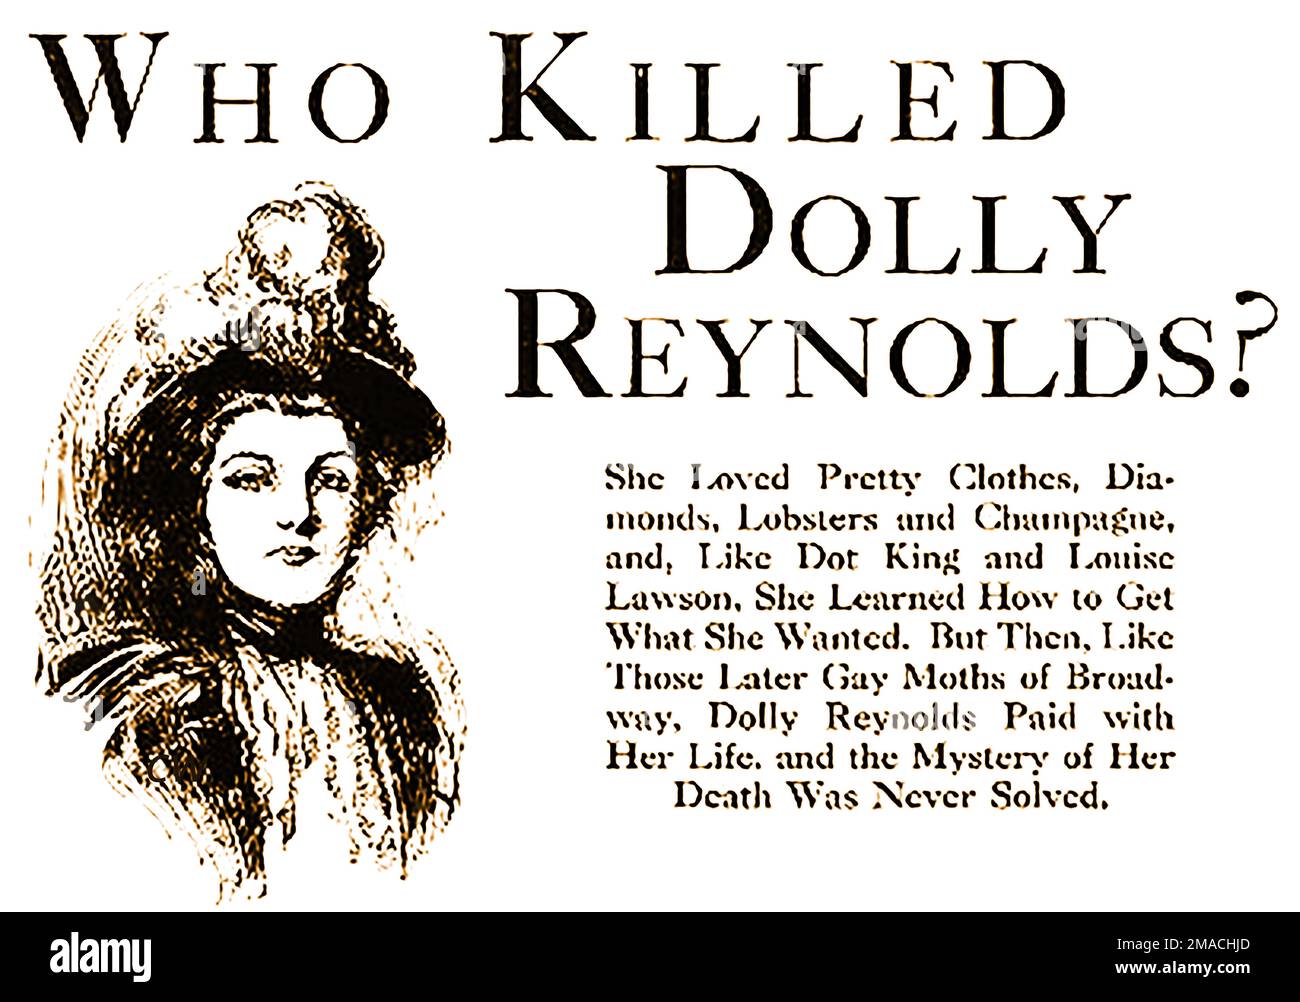 PORTRÄT VON DOLLY REYNOLDS - Zahnarzt, Dr. Samuel J. Kennedy war in den langjährigen Dolly Reynolds-Mordfall in den USA verwickelt. Die Frau, die sich unter dem Namen "E. Maxwell und Ehefrau im Grand Hotel, New York, registriert hatte, wurde am 16. August 1898 von einem Zimmermädchen ausgeraubt und tot in ihrem Zimmer aufgefunden, ihr Mörder wurde nie gefunden. Stockfoto